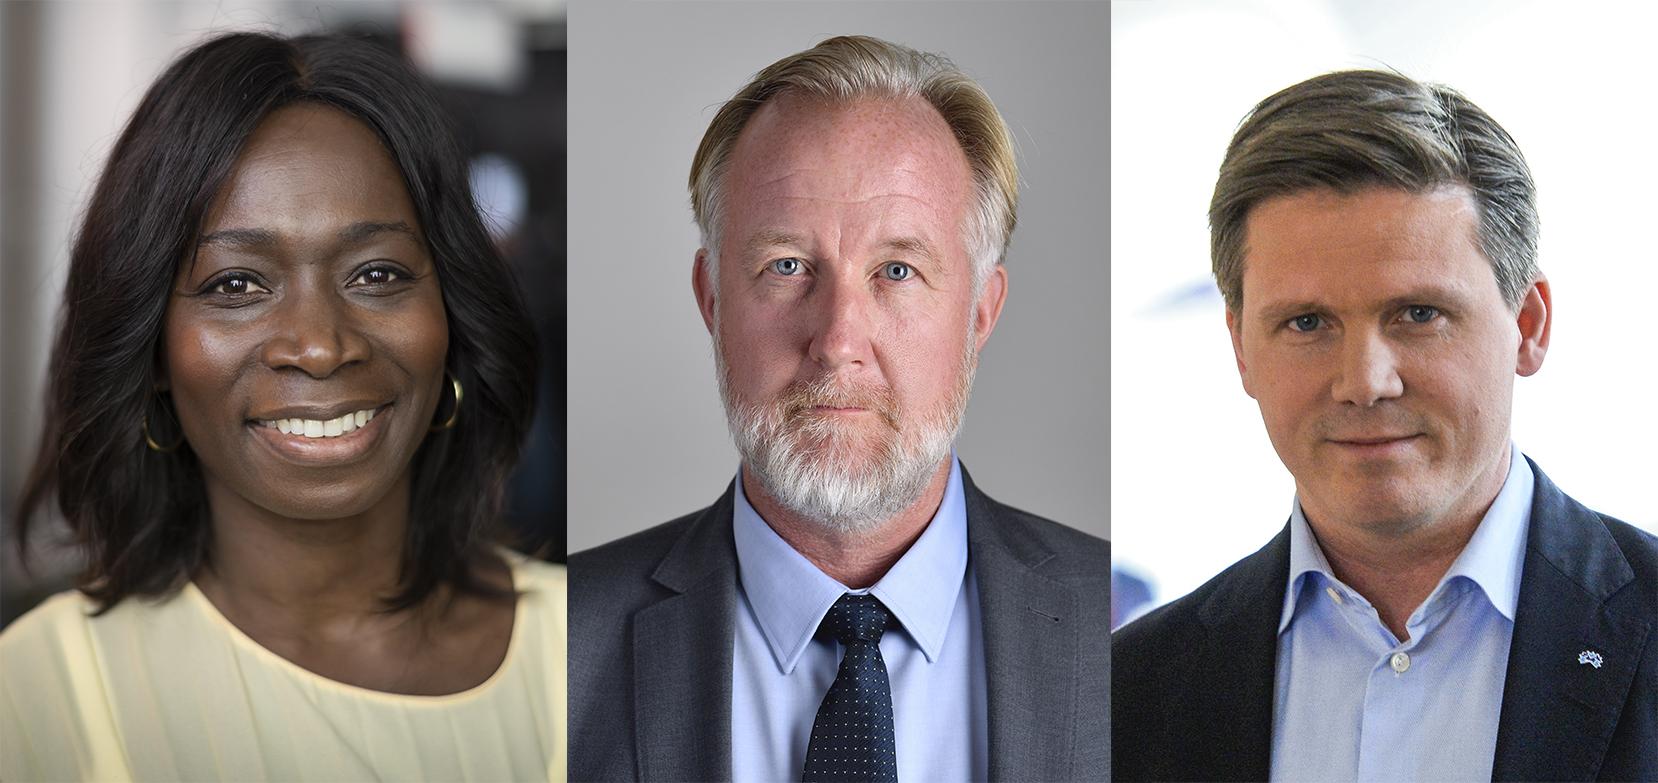 Nyamko Sabuni, Johan Pehrson och Erik Ullenhag vill alla ta över Liberalerna efter Jan Björklund. Arkivbild.